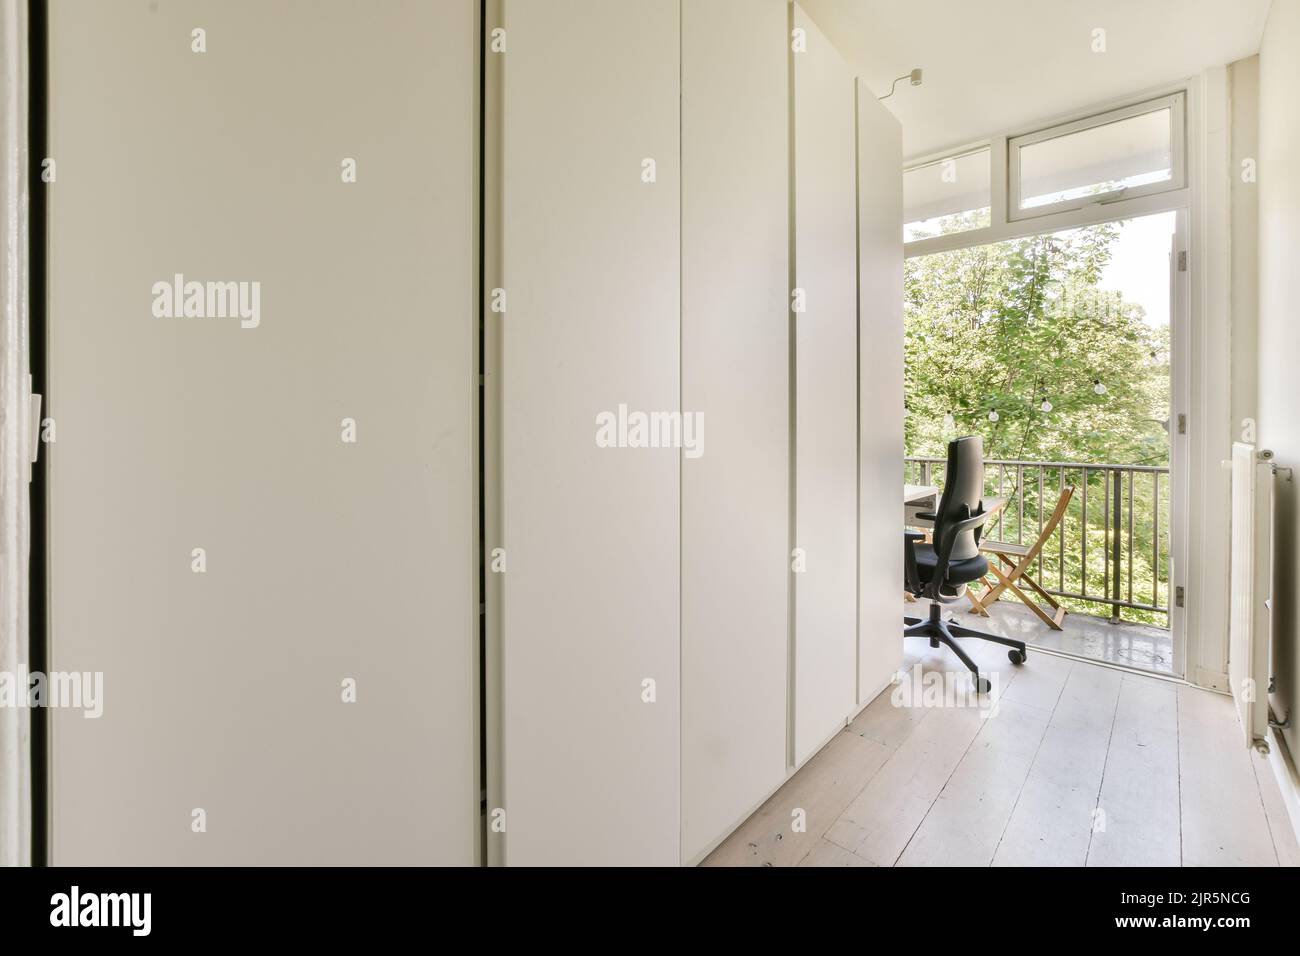 Intérieur moderne plat de style minimaliste avec couloir vide étroit éclairé par des lampes Banque D'Images